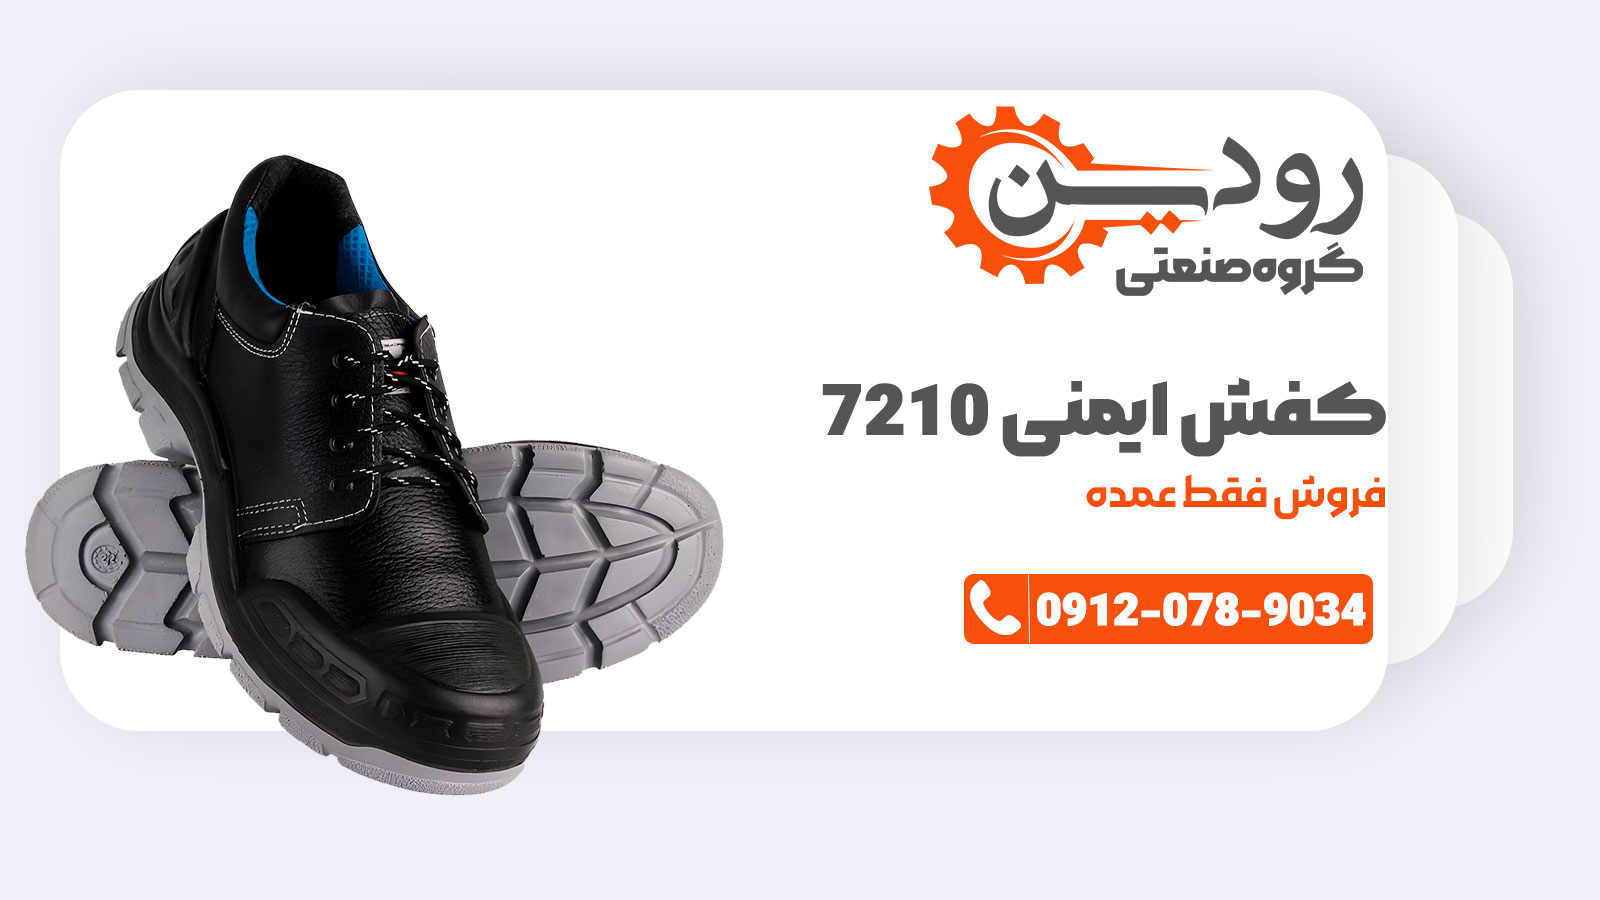 کفش ایمنی کلار 7210 دارای ساق کوتاه میباشد و قیمت بسیار مناسبی دارد.